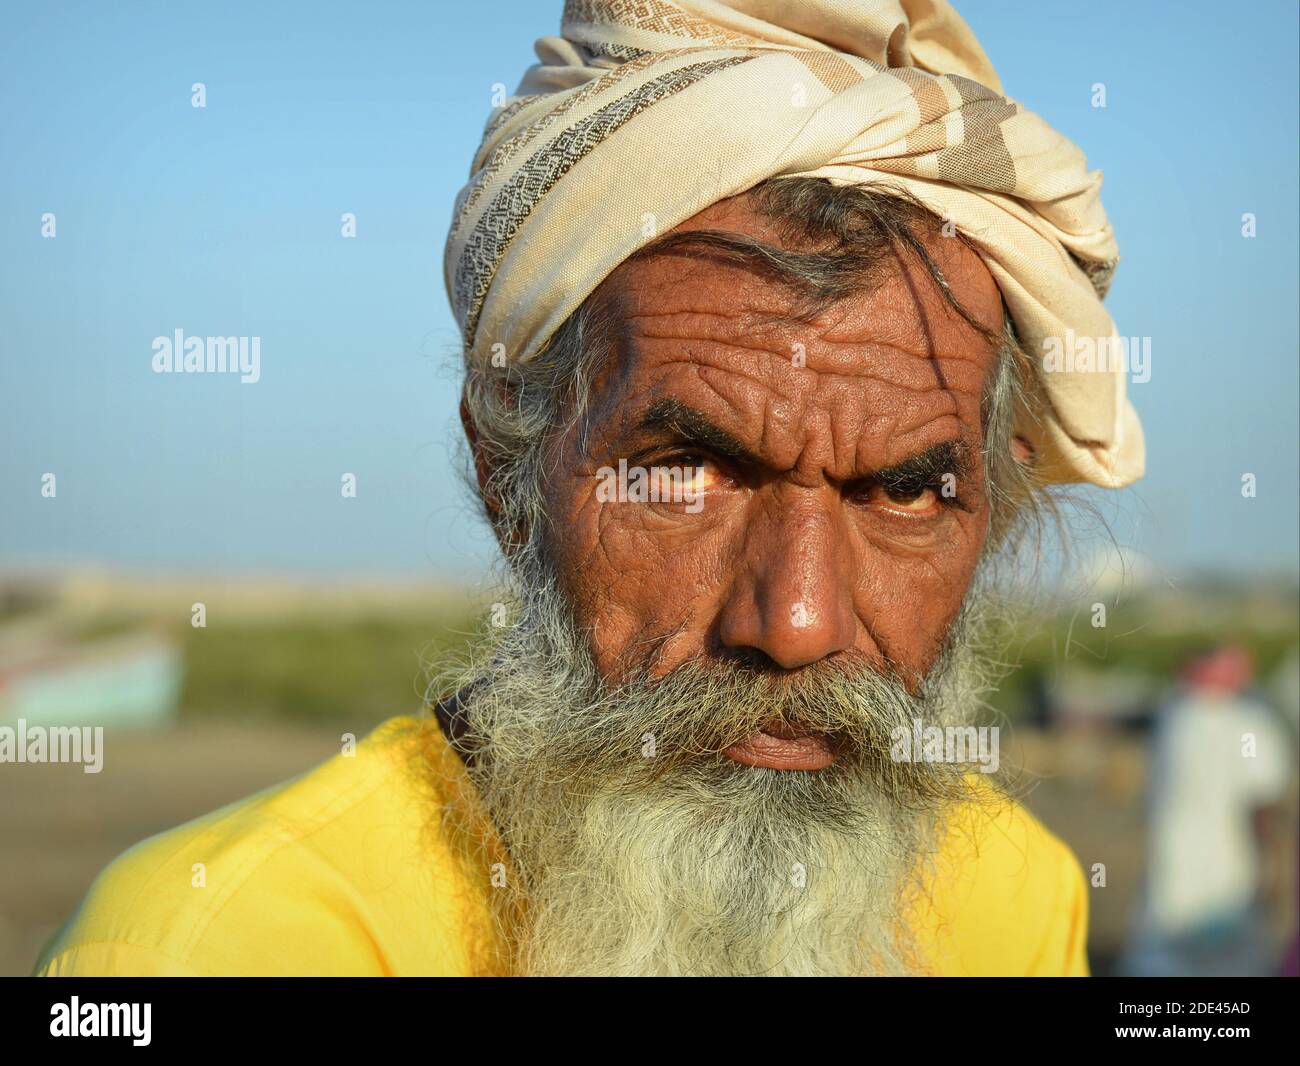 Stern-aussehender bärtiger turbanierter alter Inder mit eingehüftem Gesicht und tiefen Falten auf der Stirn starrt auf die Kamera. Stockfoto